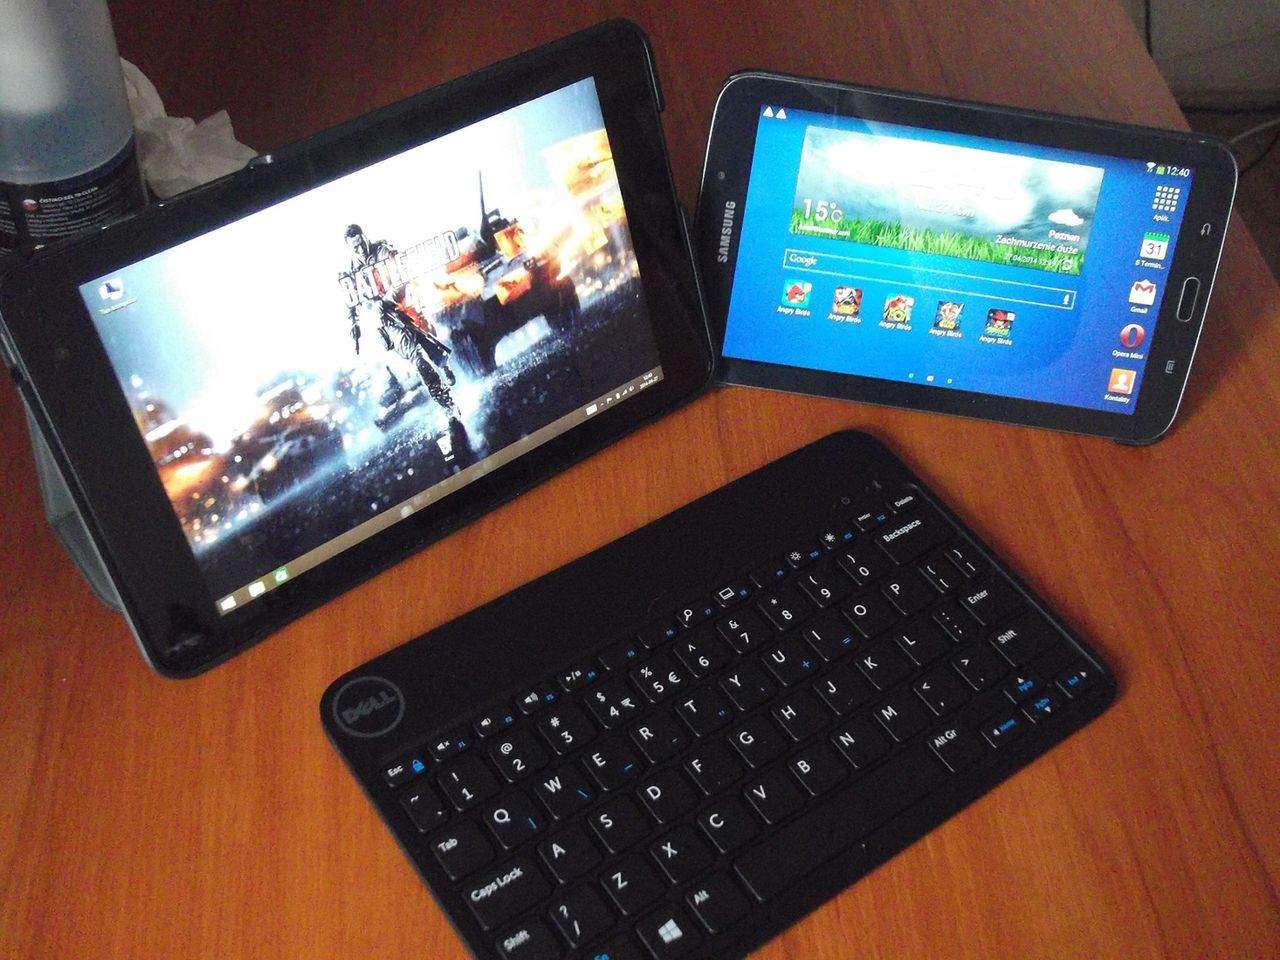 Okiem Pangrysa – Dell Venue 8 Pro i Miracast, czyli naprawdę świetny tablet z Windows 8.1 